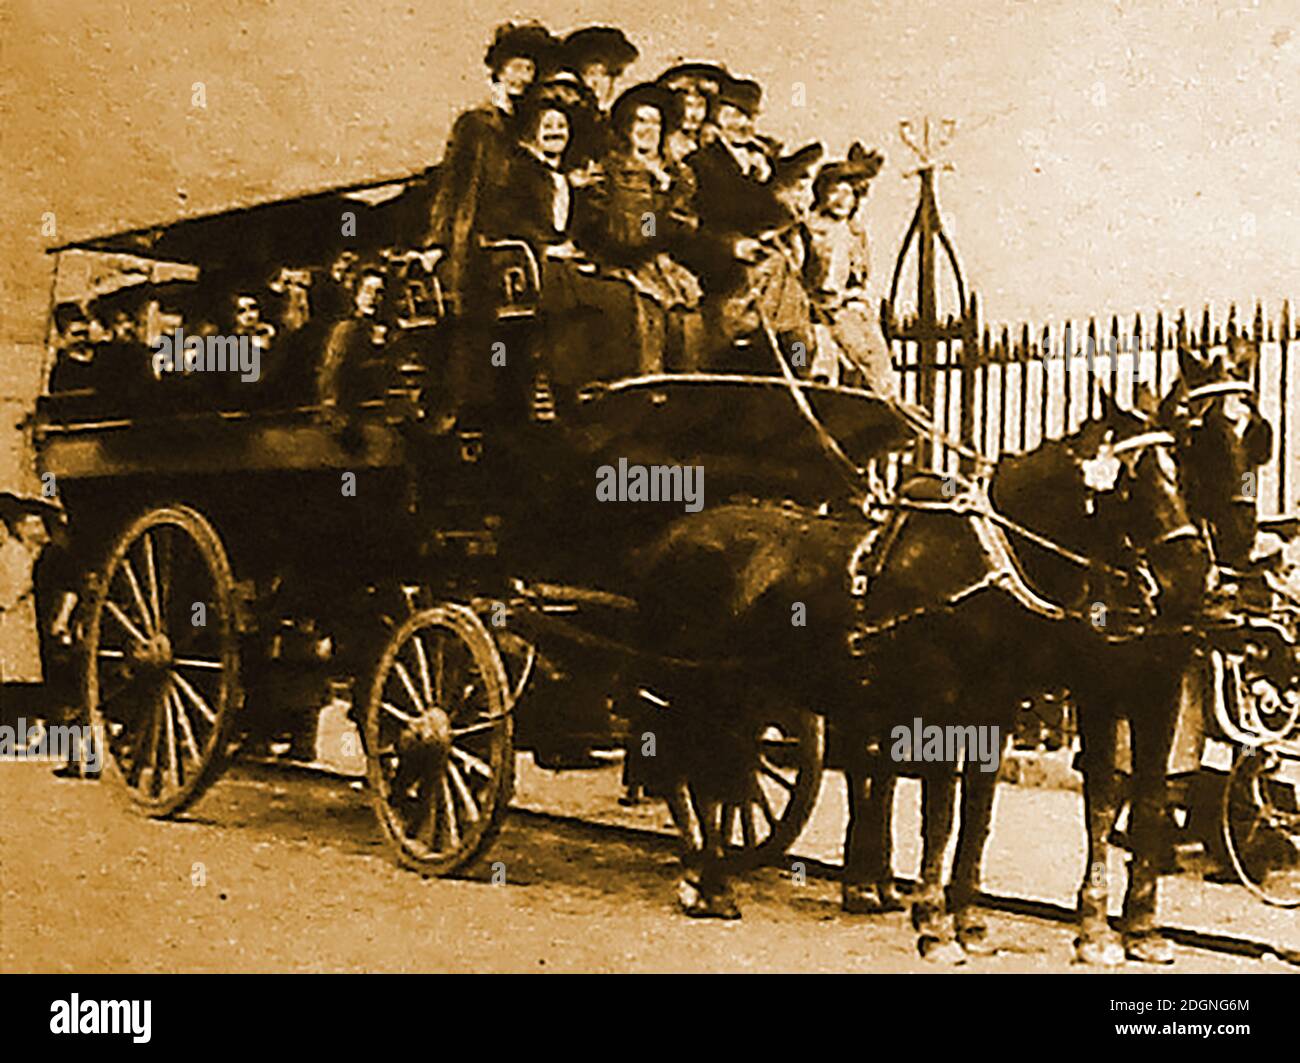 Eine alte frühe Sepia-Fotografie von Frauen, die eine Reise machen Auf einem alten Pferd gezogenen Frauen Arbeit Exkursion Bus bekannt dann Als Pferdebremse oder Pferdepause Stockfoto